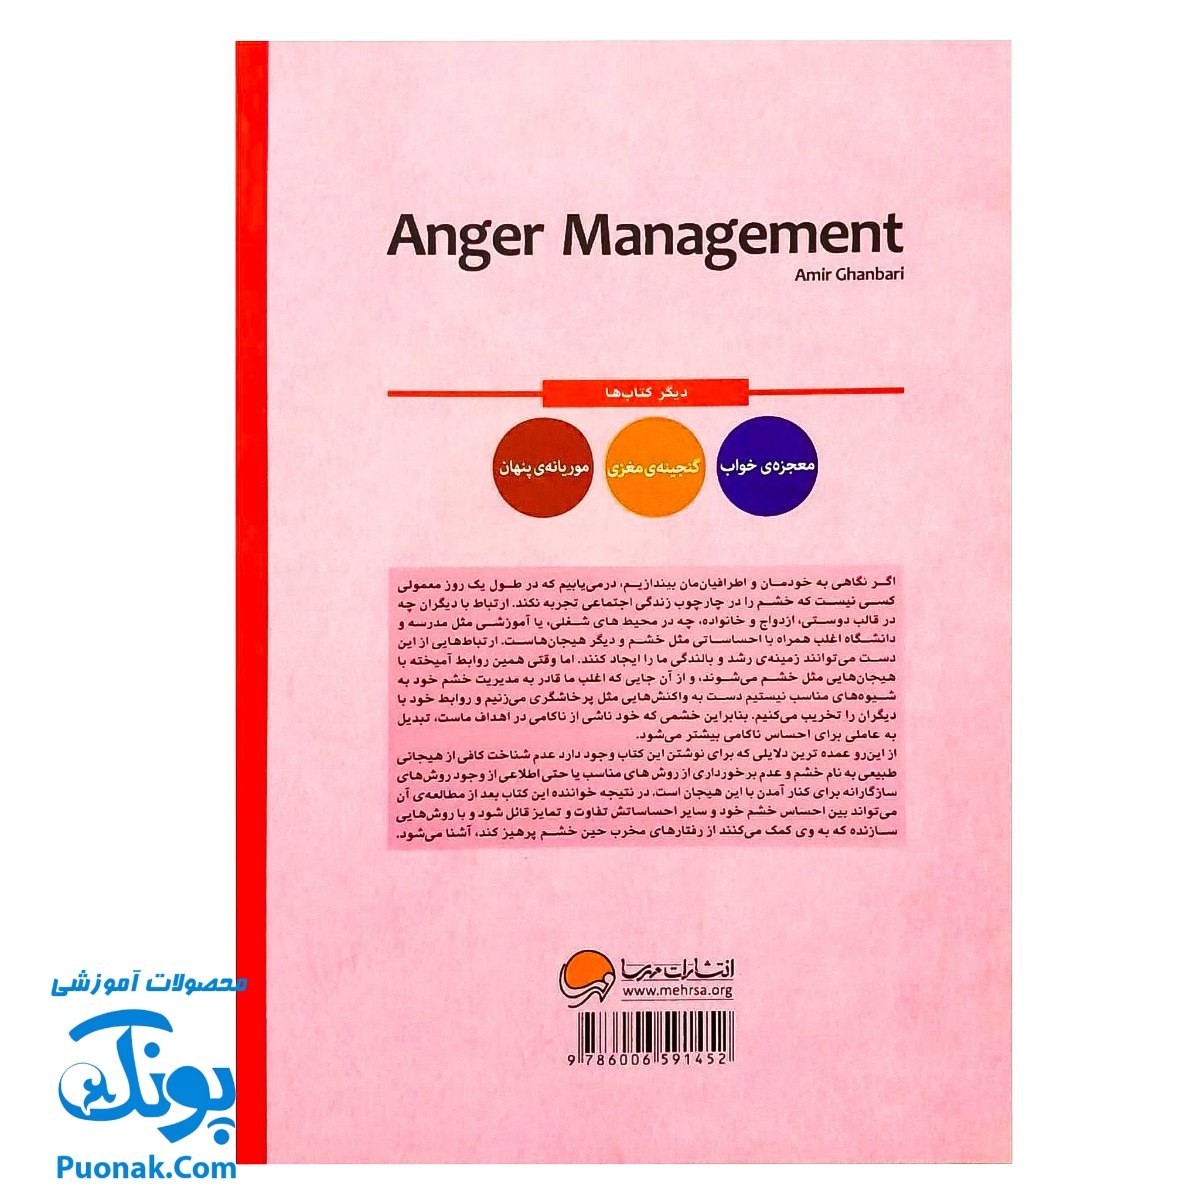 کتاب مدیریت خشم چگونه خشم یا عصبانیت خود را مدیریت کنیم